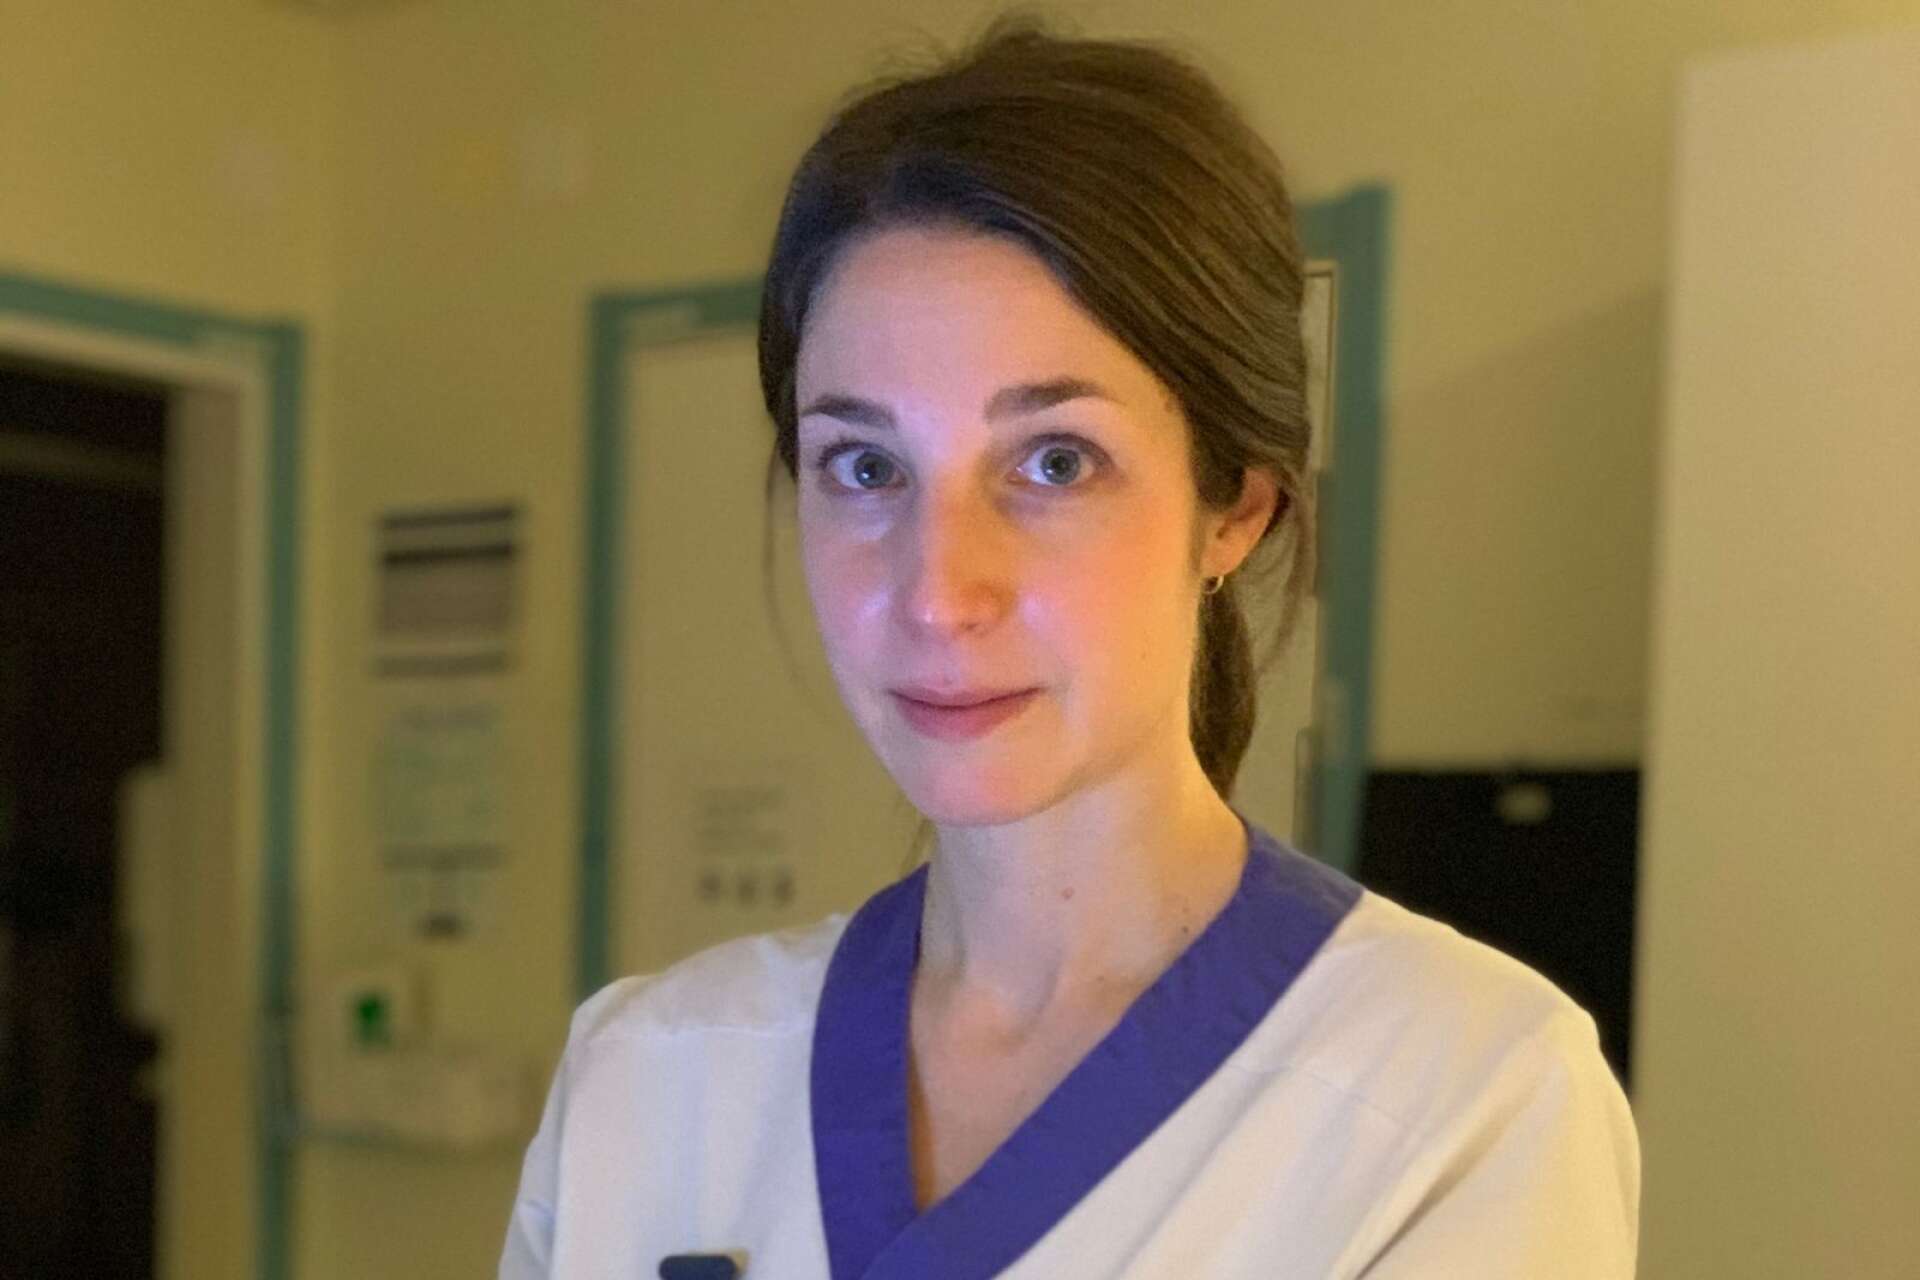 ”Det är som att ingen lyssnar”, säger Cecilia Halldin, sjuksköterska på Centralsjukhuset i Karlstad och förtroendevald i Vårdförbundet Värmland. 